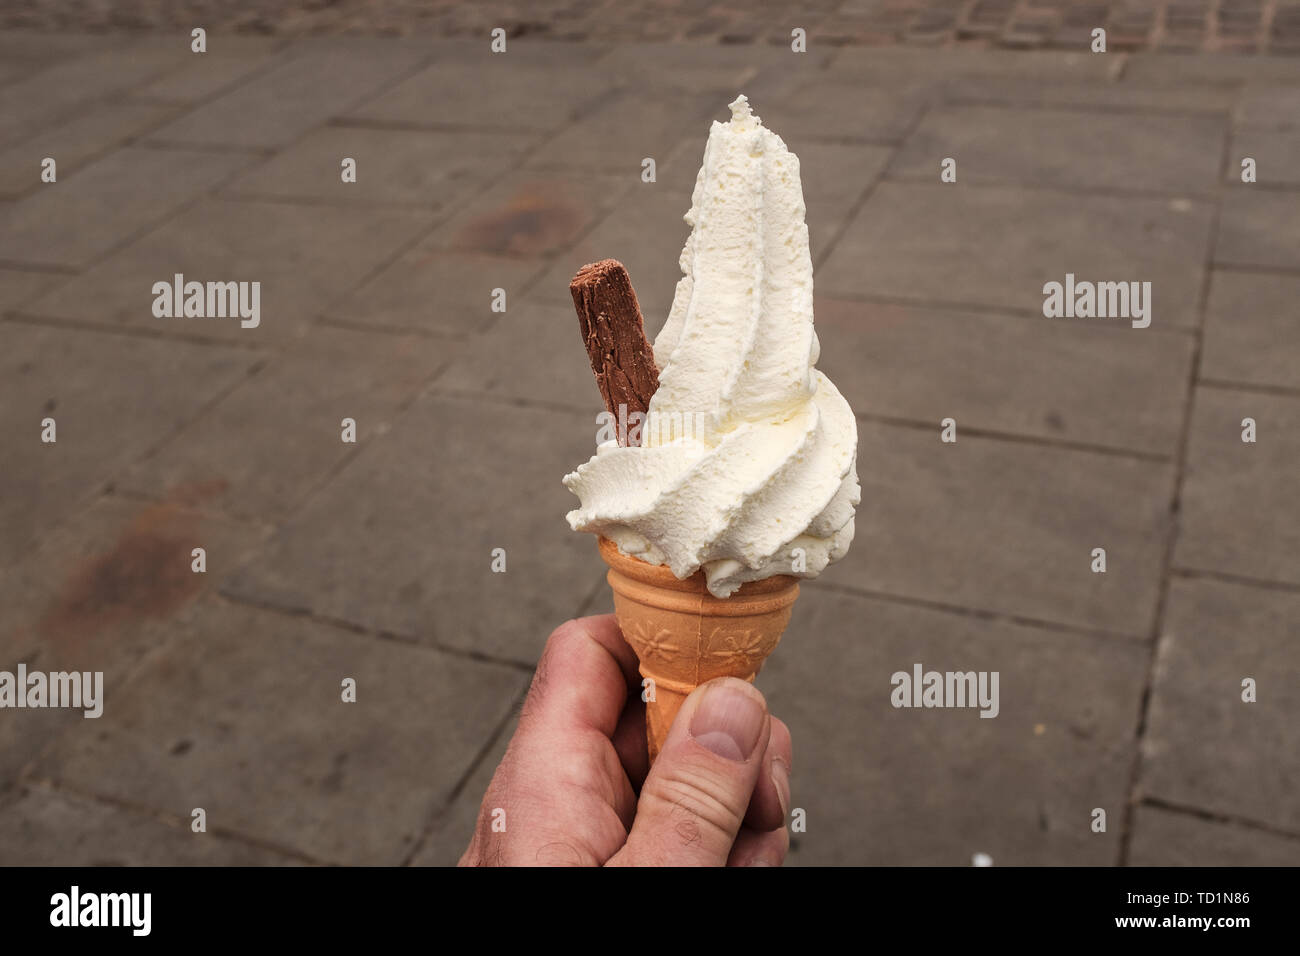 Primer plano de un hombre azotado mano sosteniendo un helado de crema con copos de chocolate que sobresalen del lado, aisladas contra un fondo liso Foto de stock